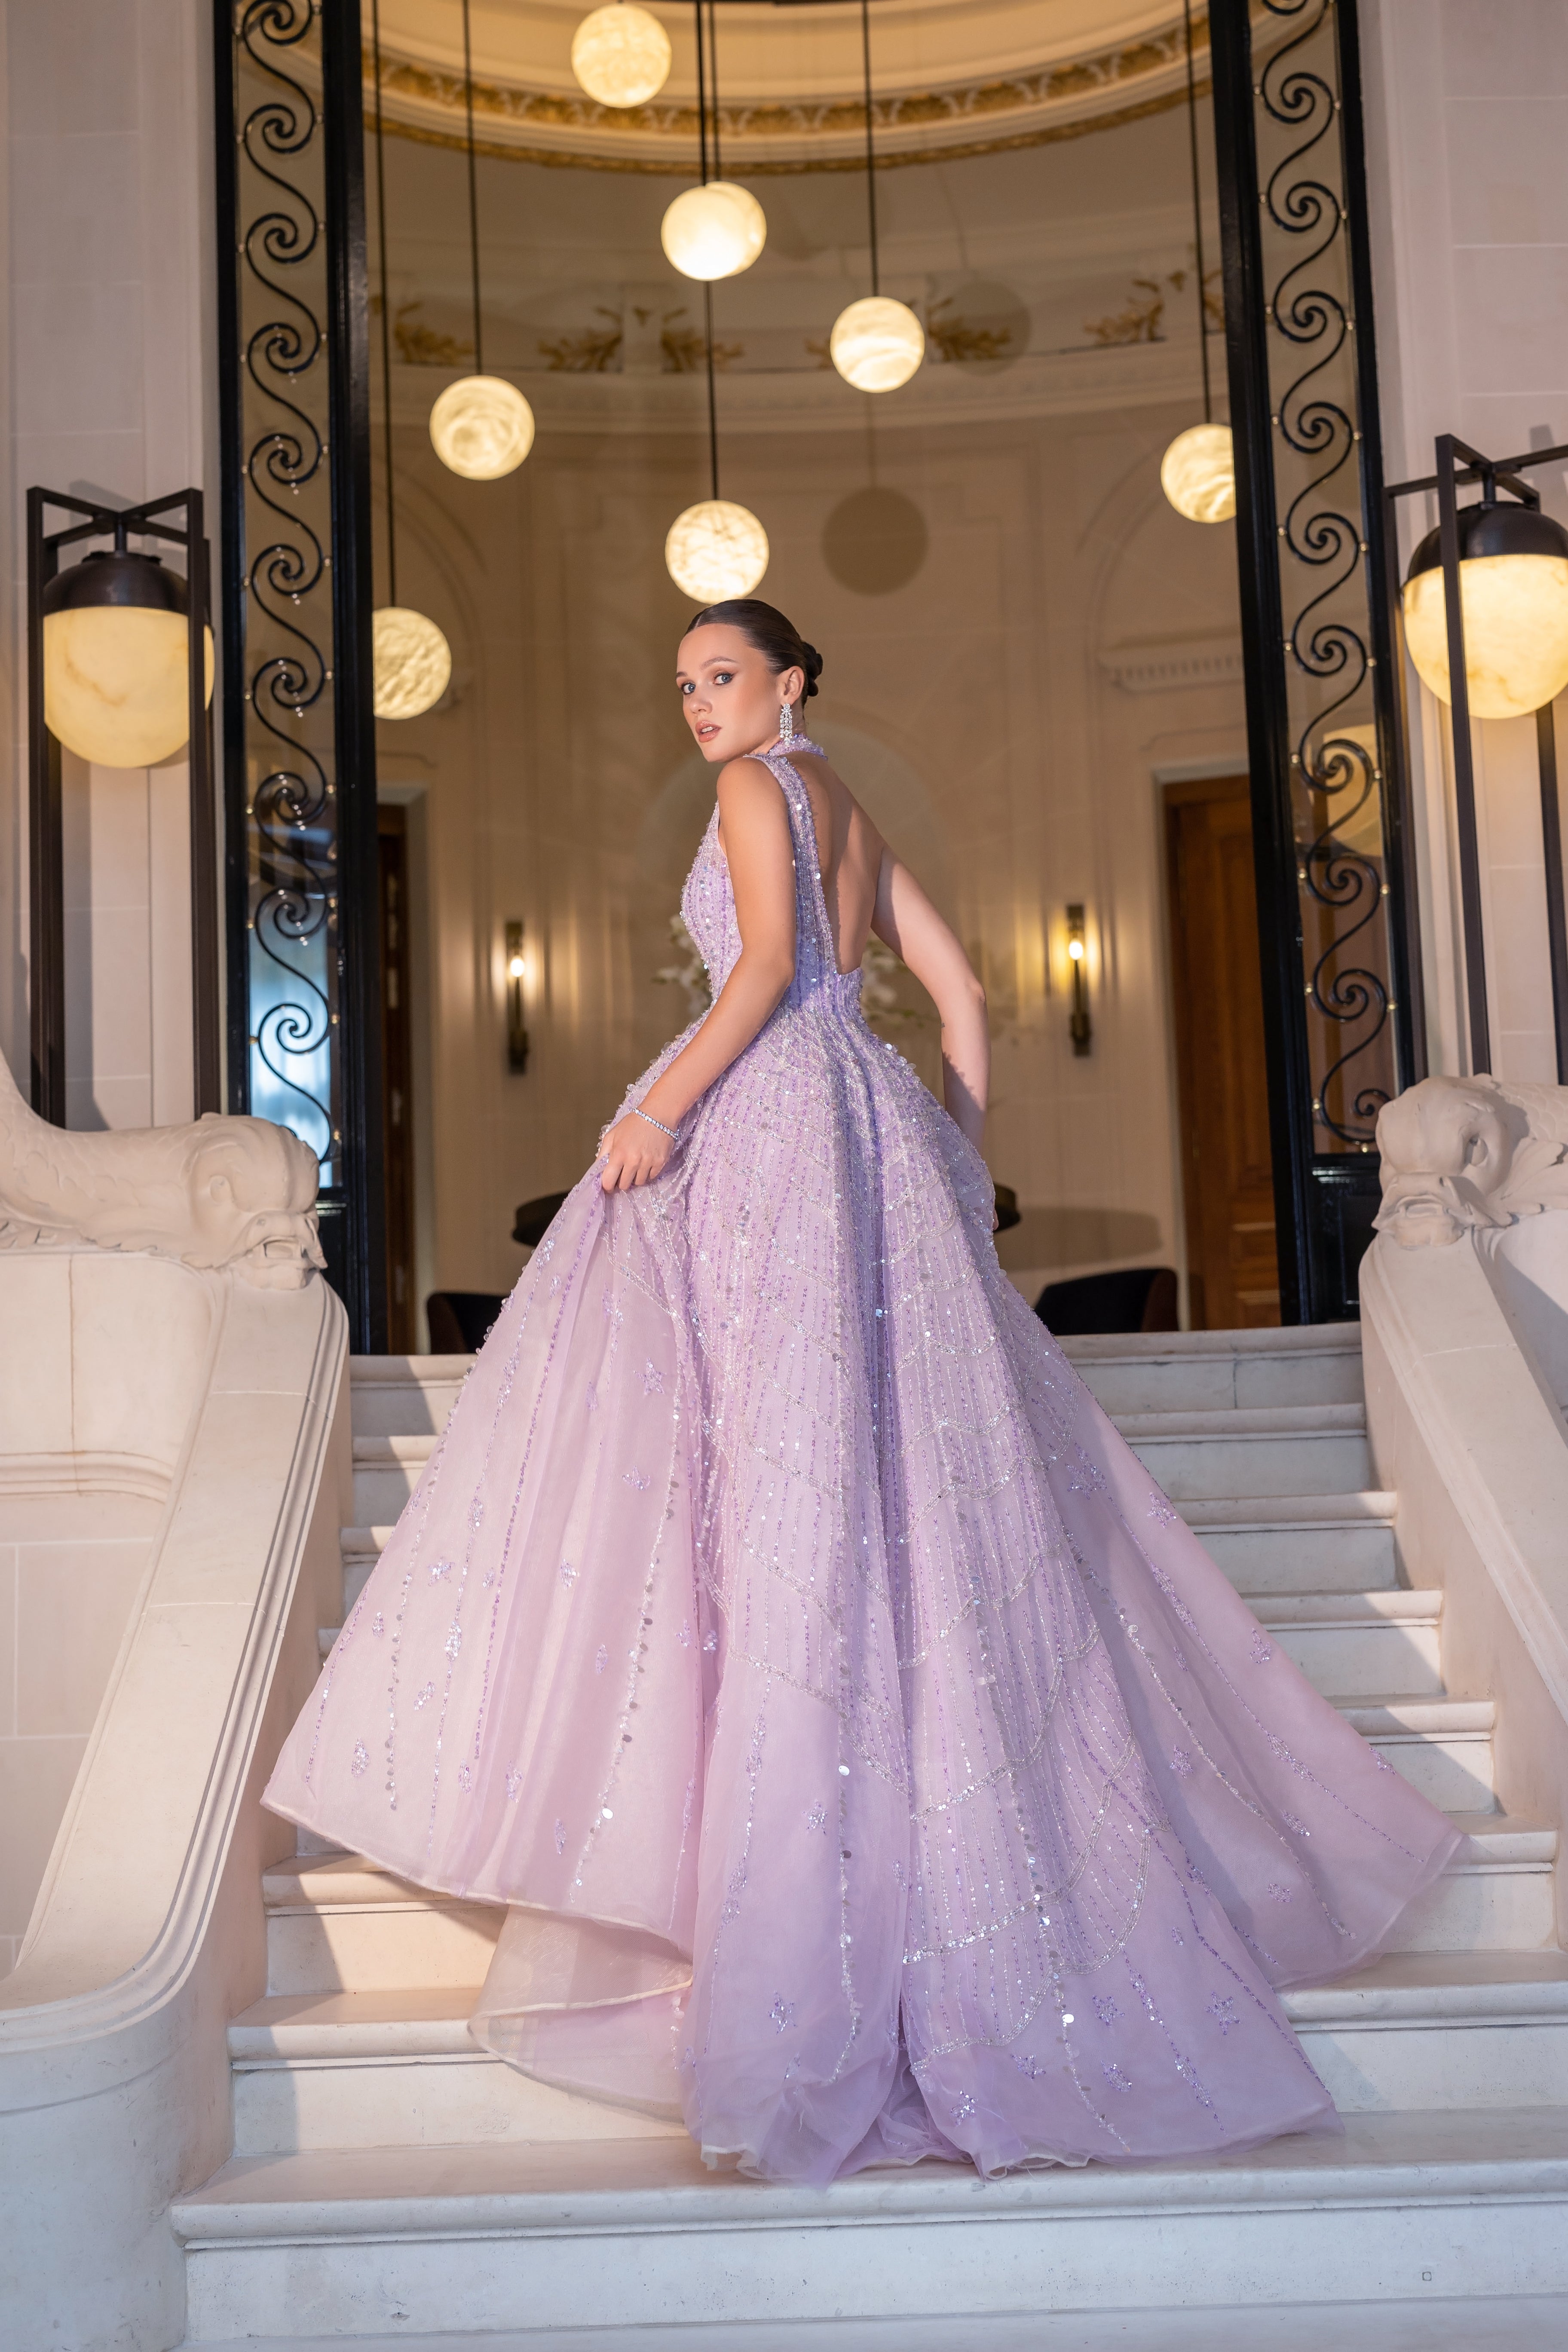 Anastasia dress in bright lavender